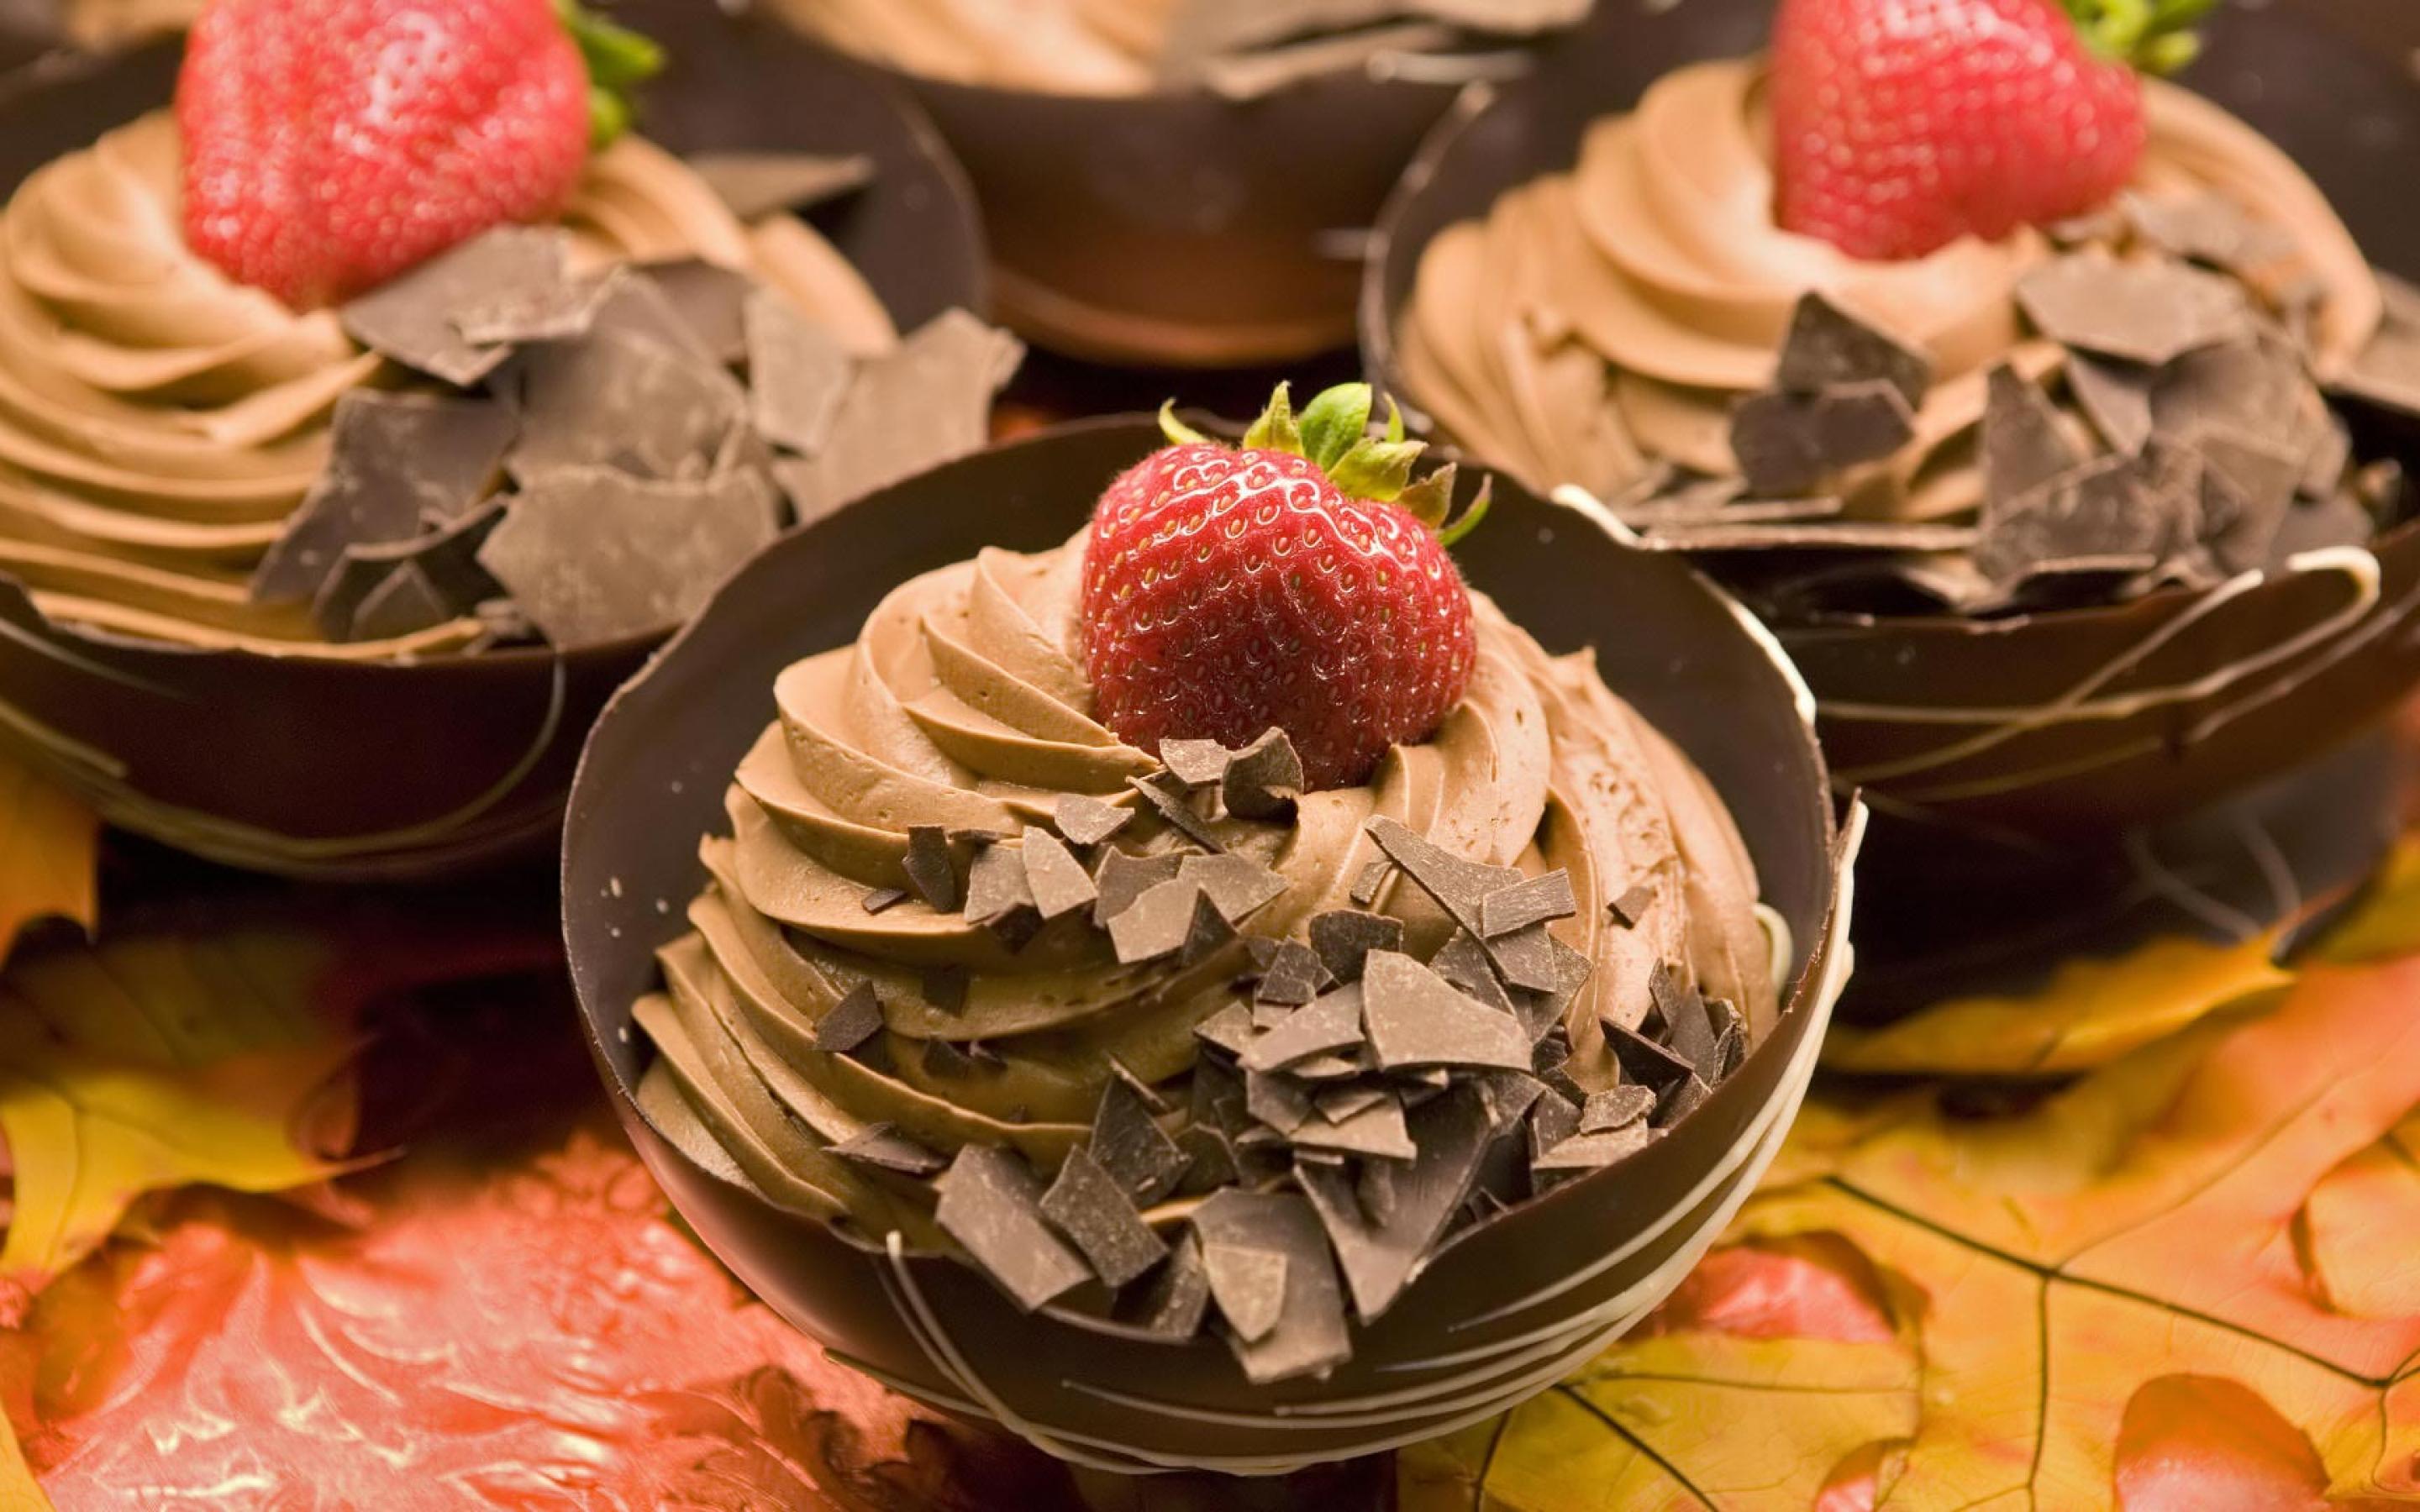 عکس فوق العاده خوشگل بستنی با تزئین خواستنی توت فرنگی و شکلات